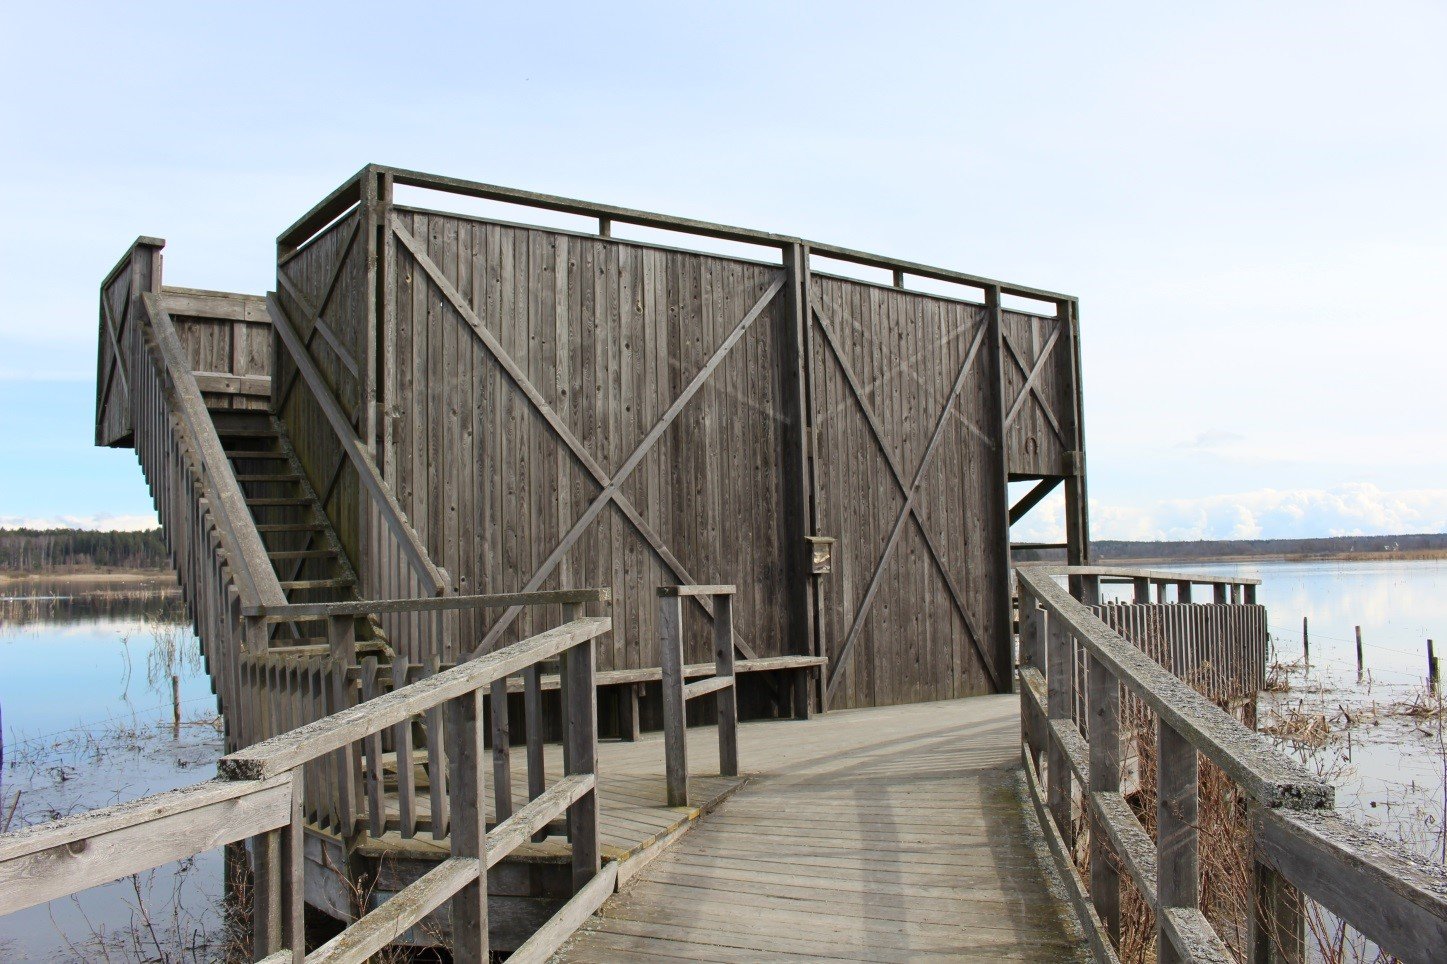 En bred träspång med handräcken leder fram till en plattform med ett fågeltorn. En hög trappa med handräcken går upp till fågeltornet.